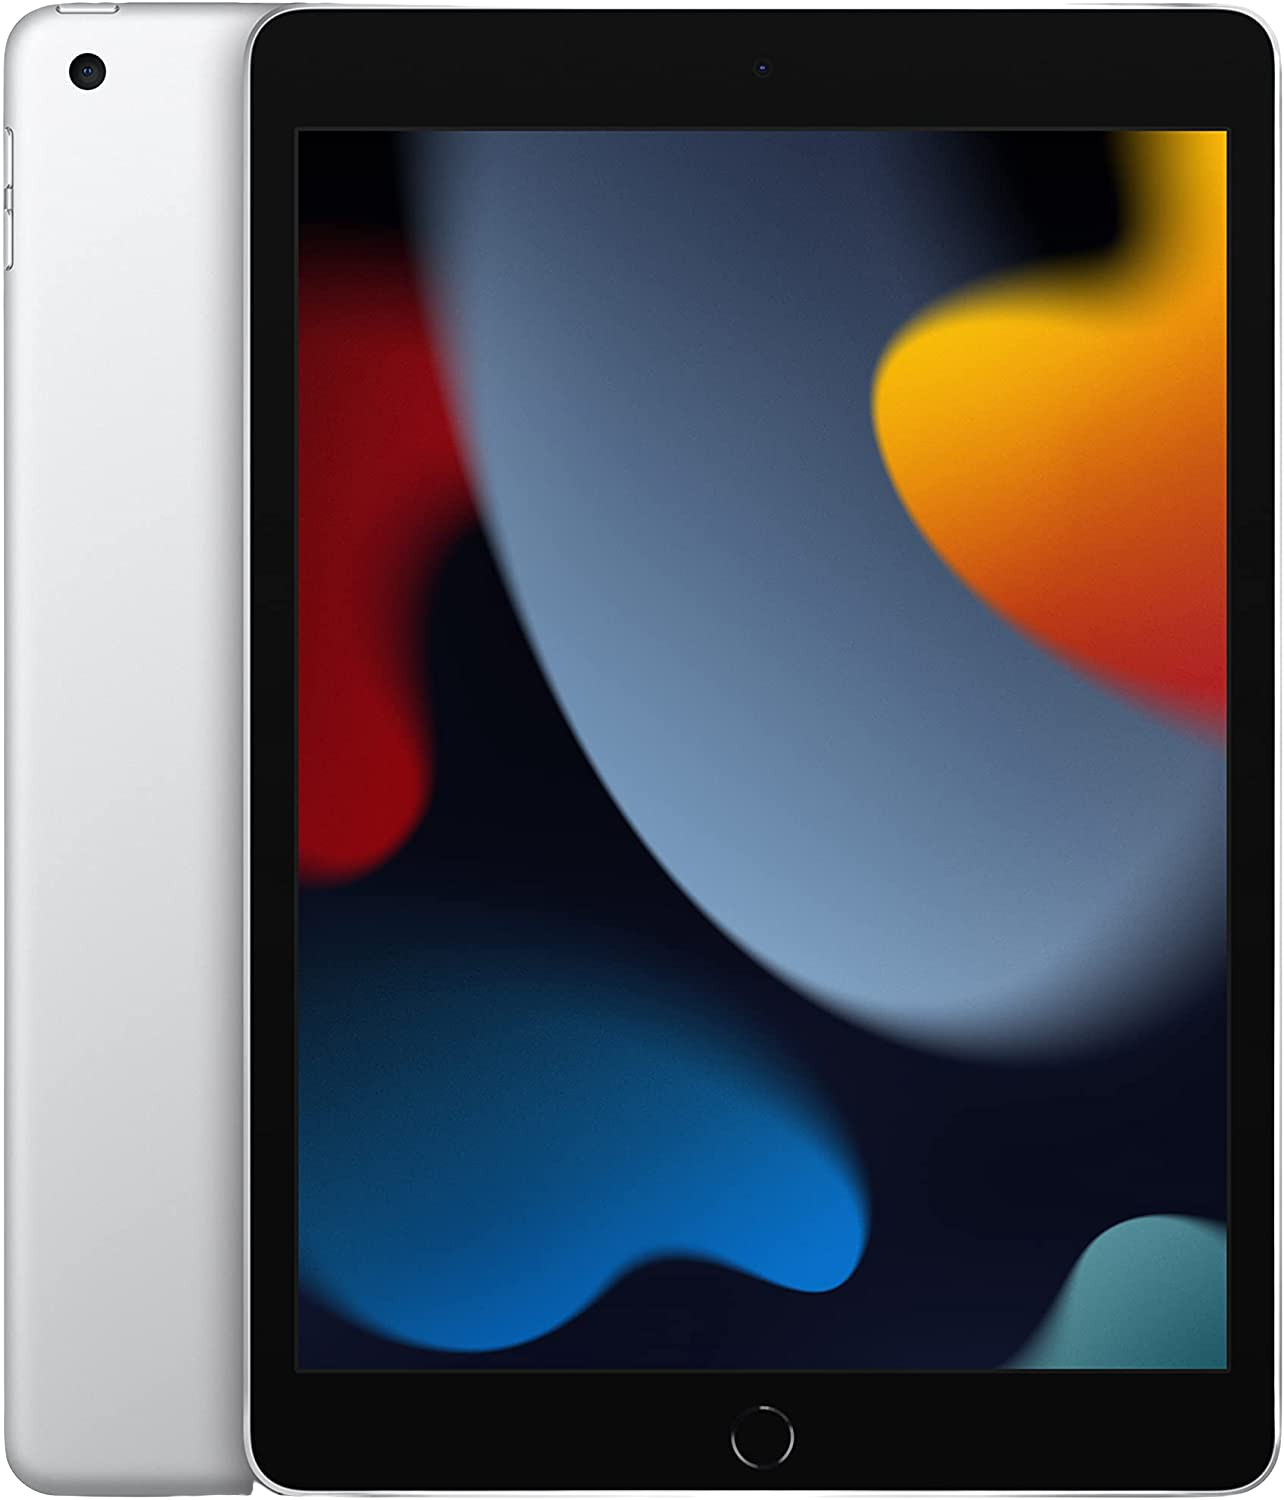 Silver Apple iPad (2021) - WiFi - iOS 15 - 256GB.1